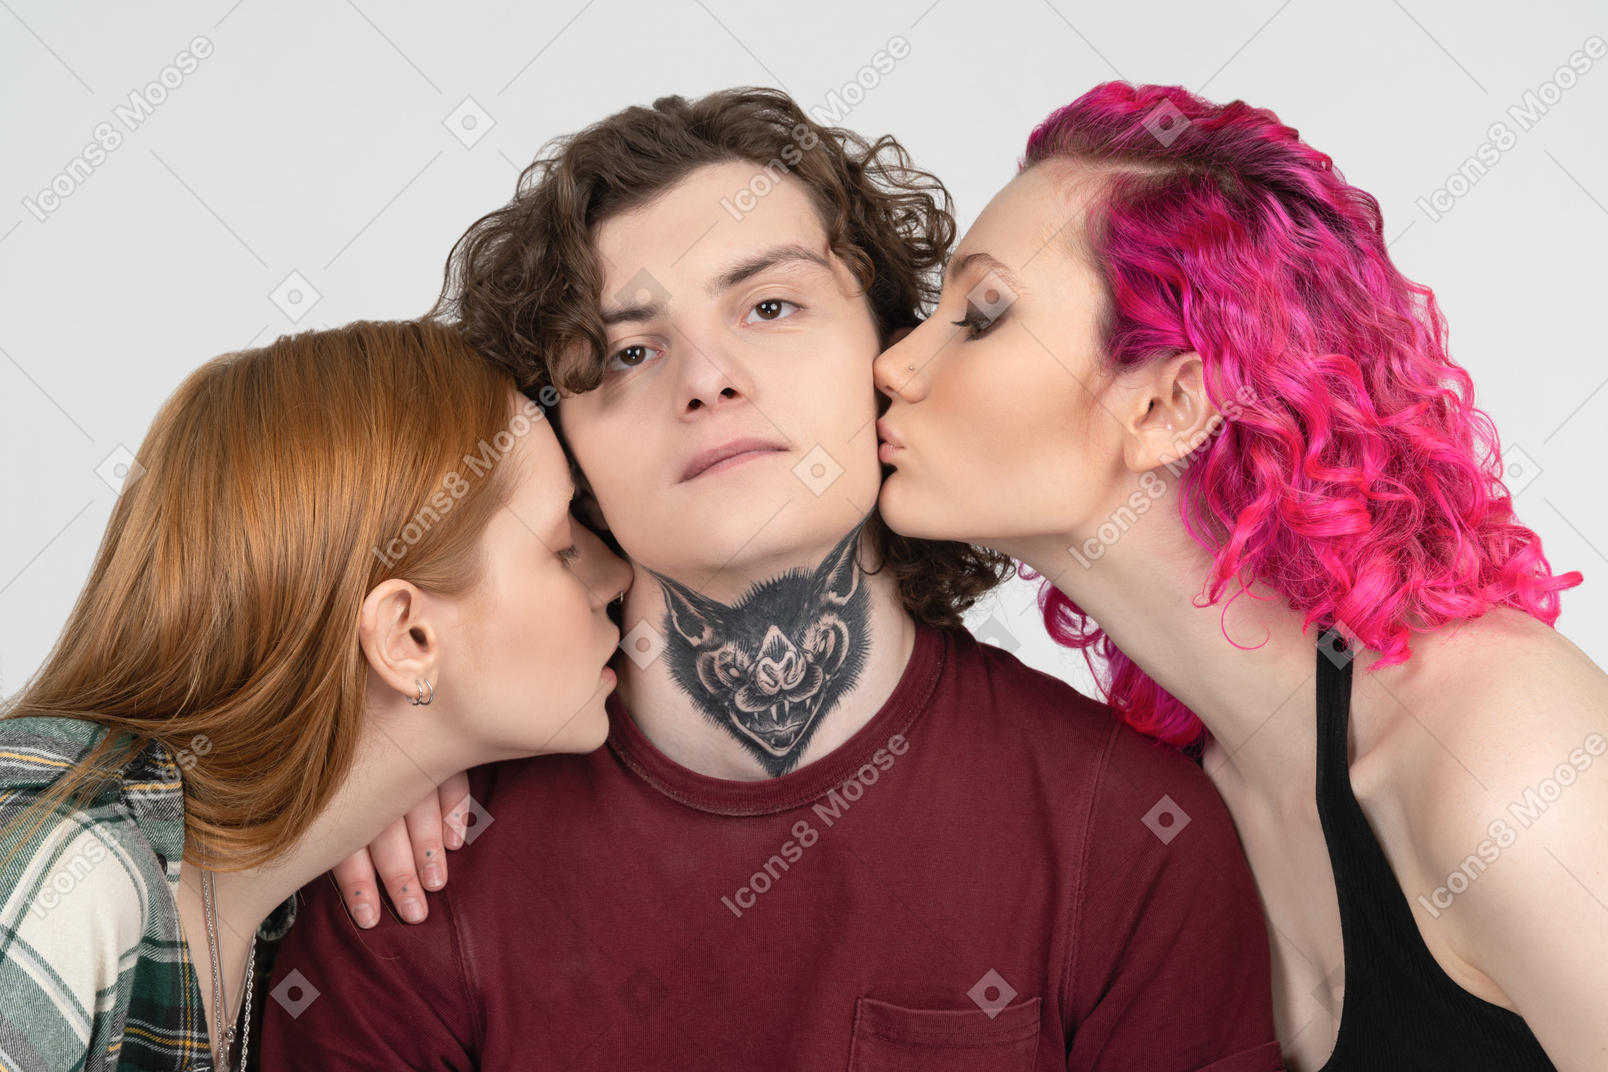 Mec avec tatouage embrassé par deux adolescentes